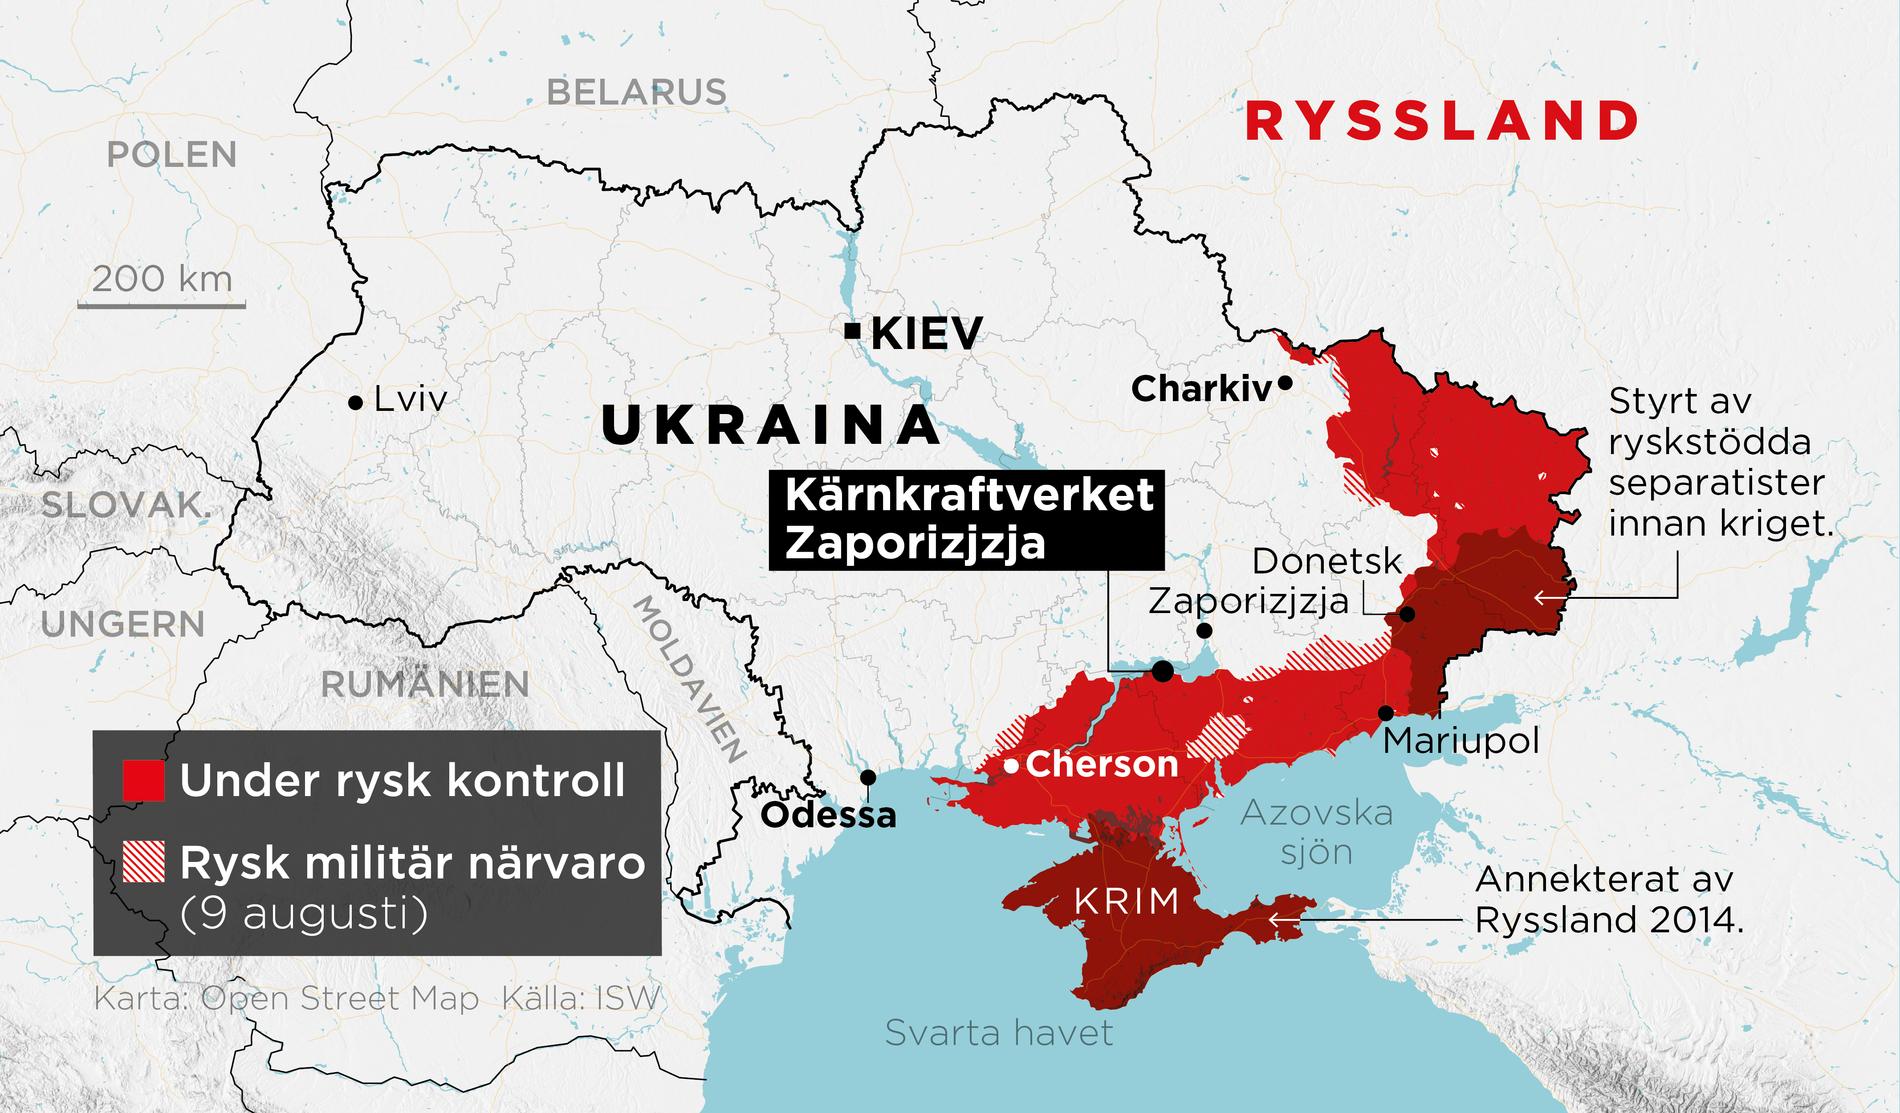 Områden under rysk kontroll samt områden med rysk militär närvaro 9 augusti samt kärnkraftverket Zaporizjzja.